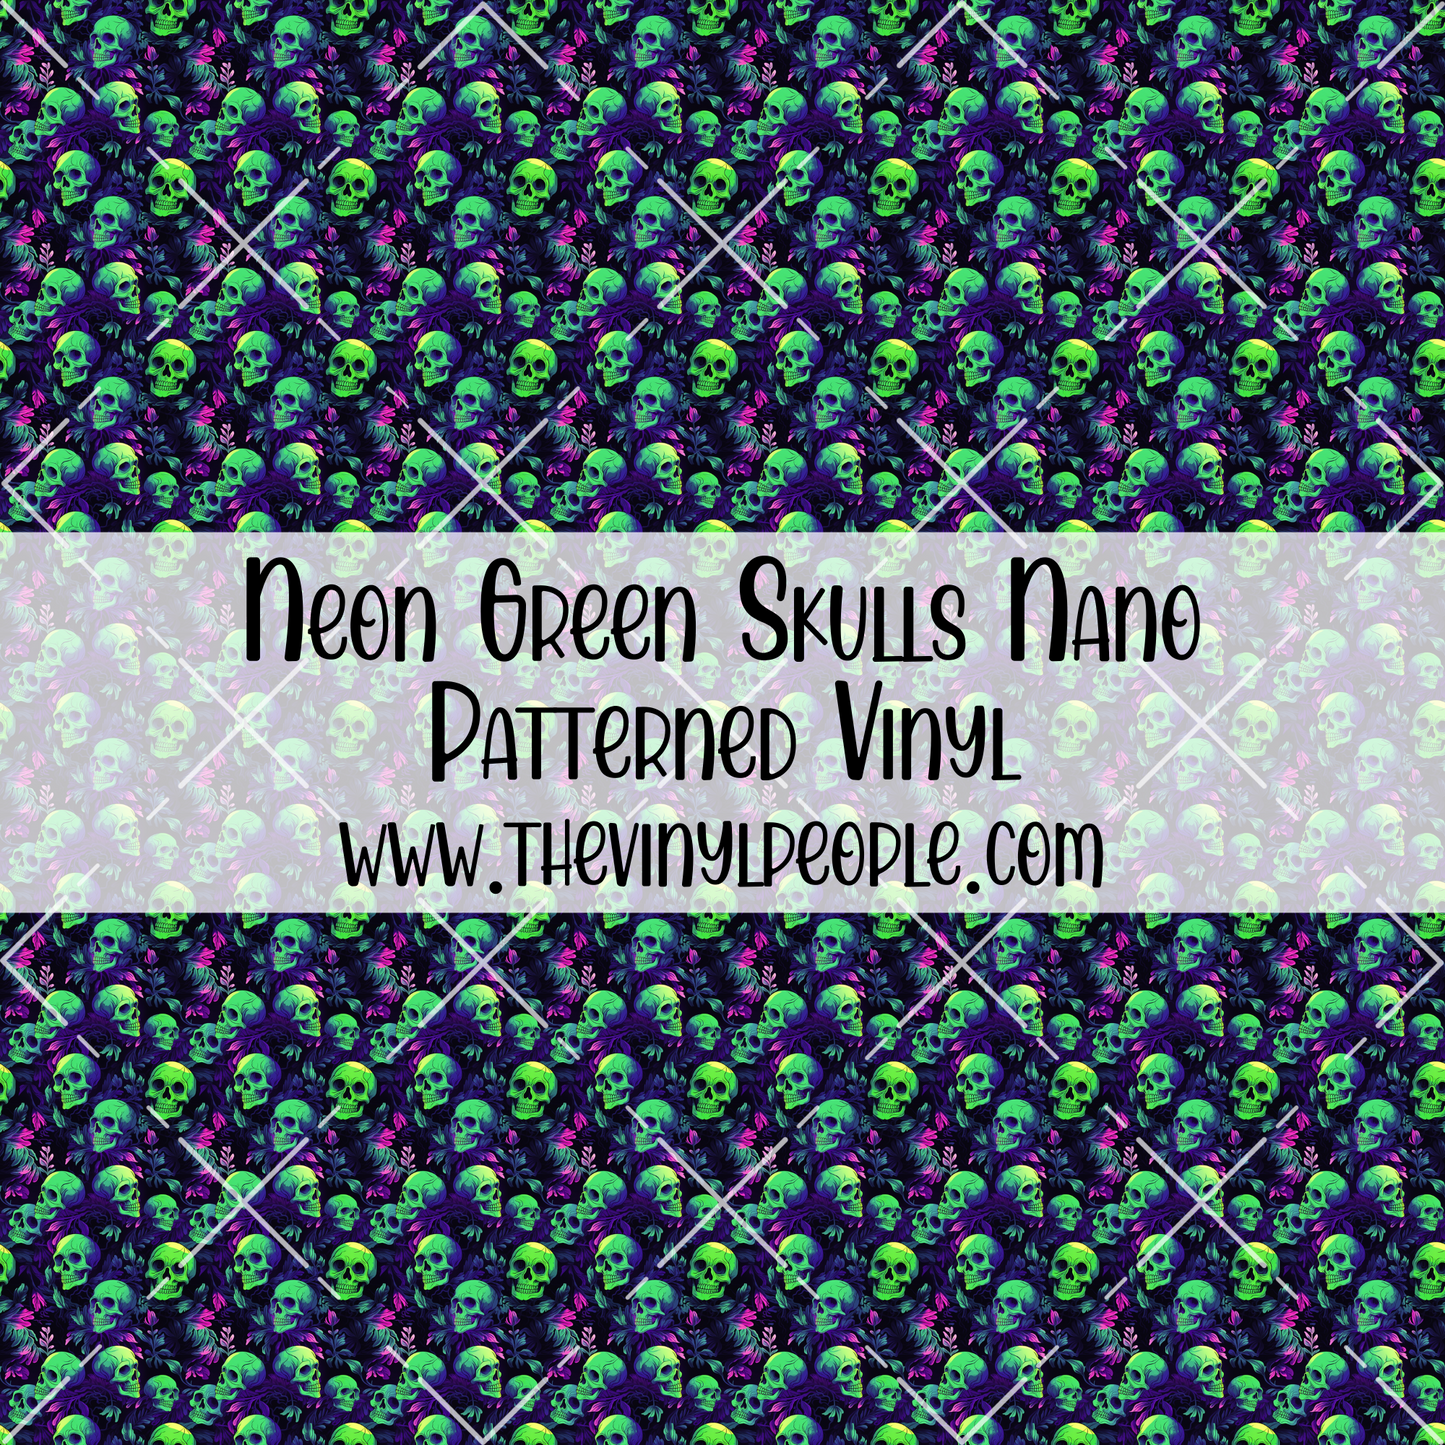 Neon Green Skulls Patterned Vinyl